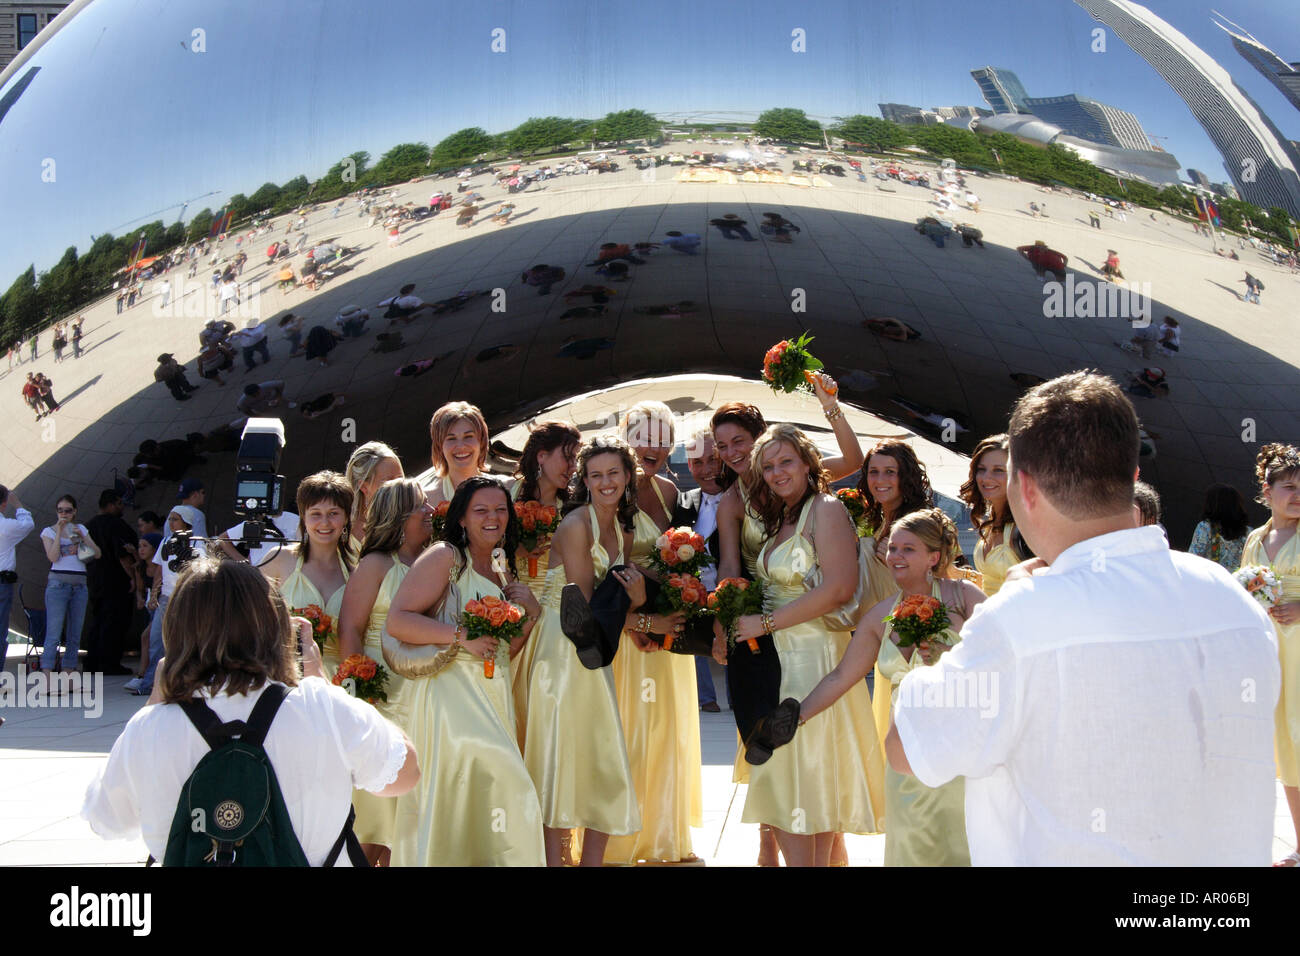 Riesen Bohnen. Cloud Gate. Millenium Park Chicago. Hochzeitsbild. Stockfoto